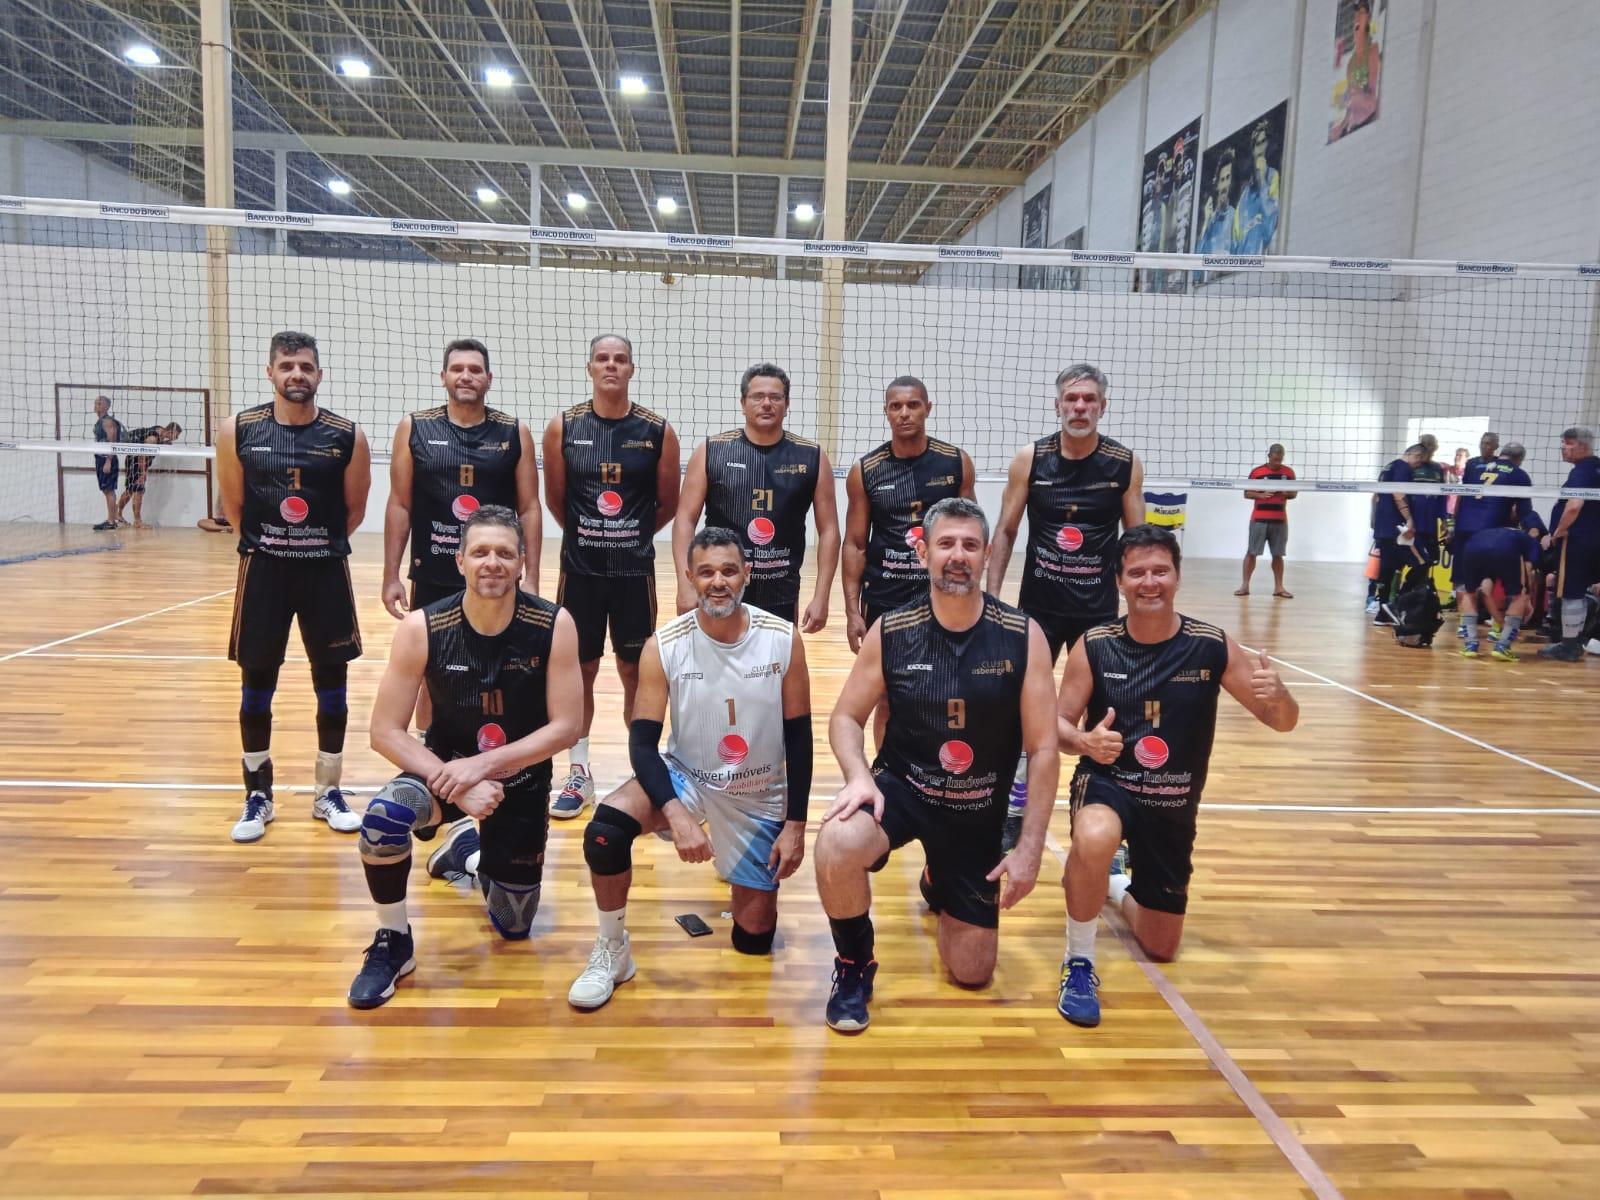 Campeonato Brasileiro Master Voleibol - Time da Sociedade de